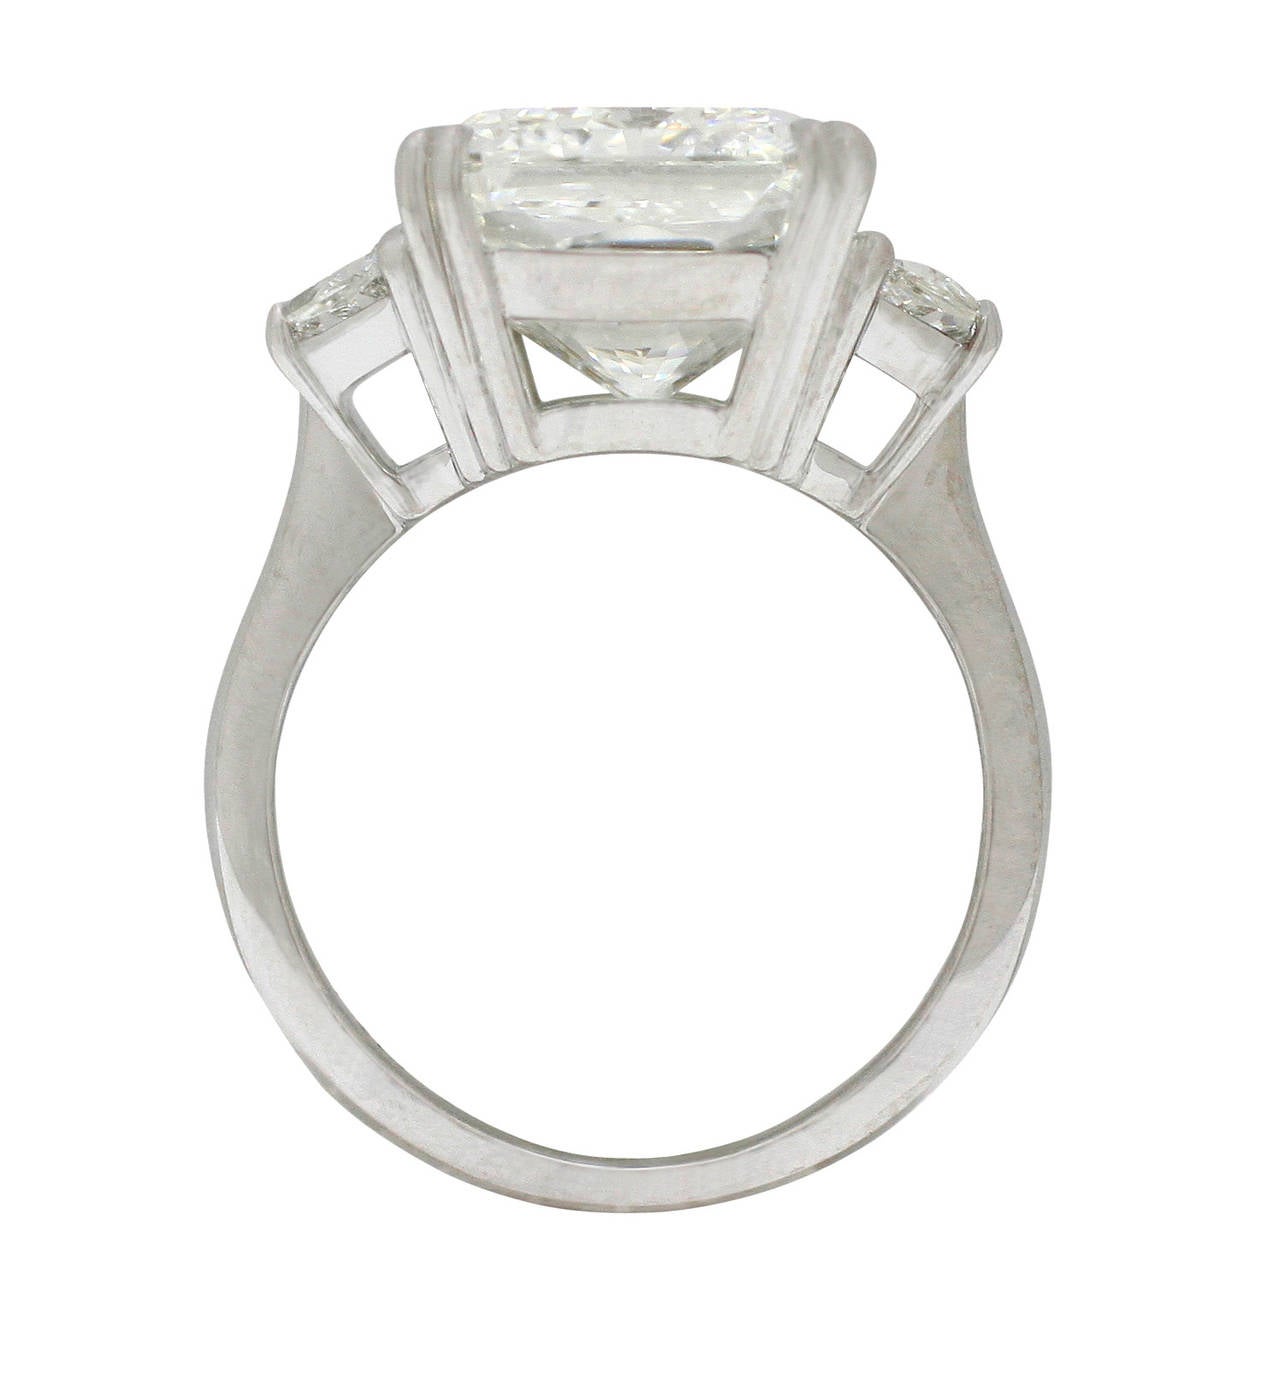 Spectacular Radiant Cut 9.27  Carat Diamond Platinum Ring For Sale 2